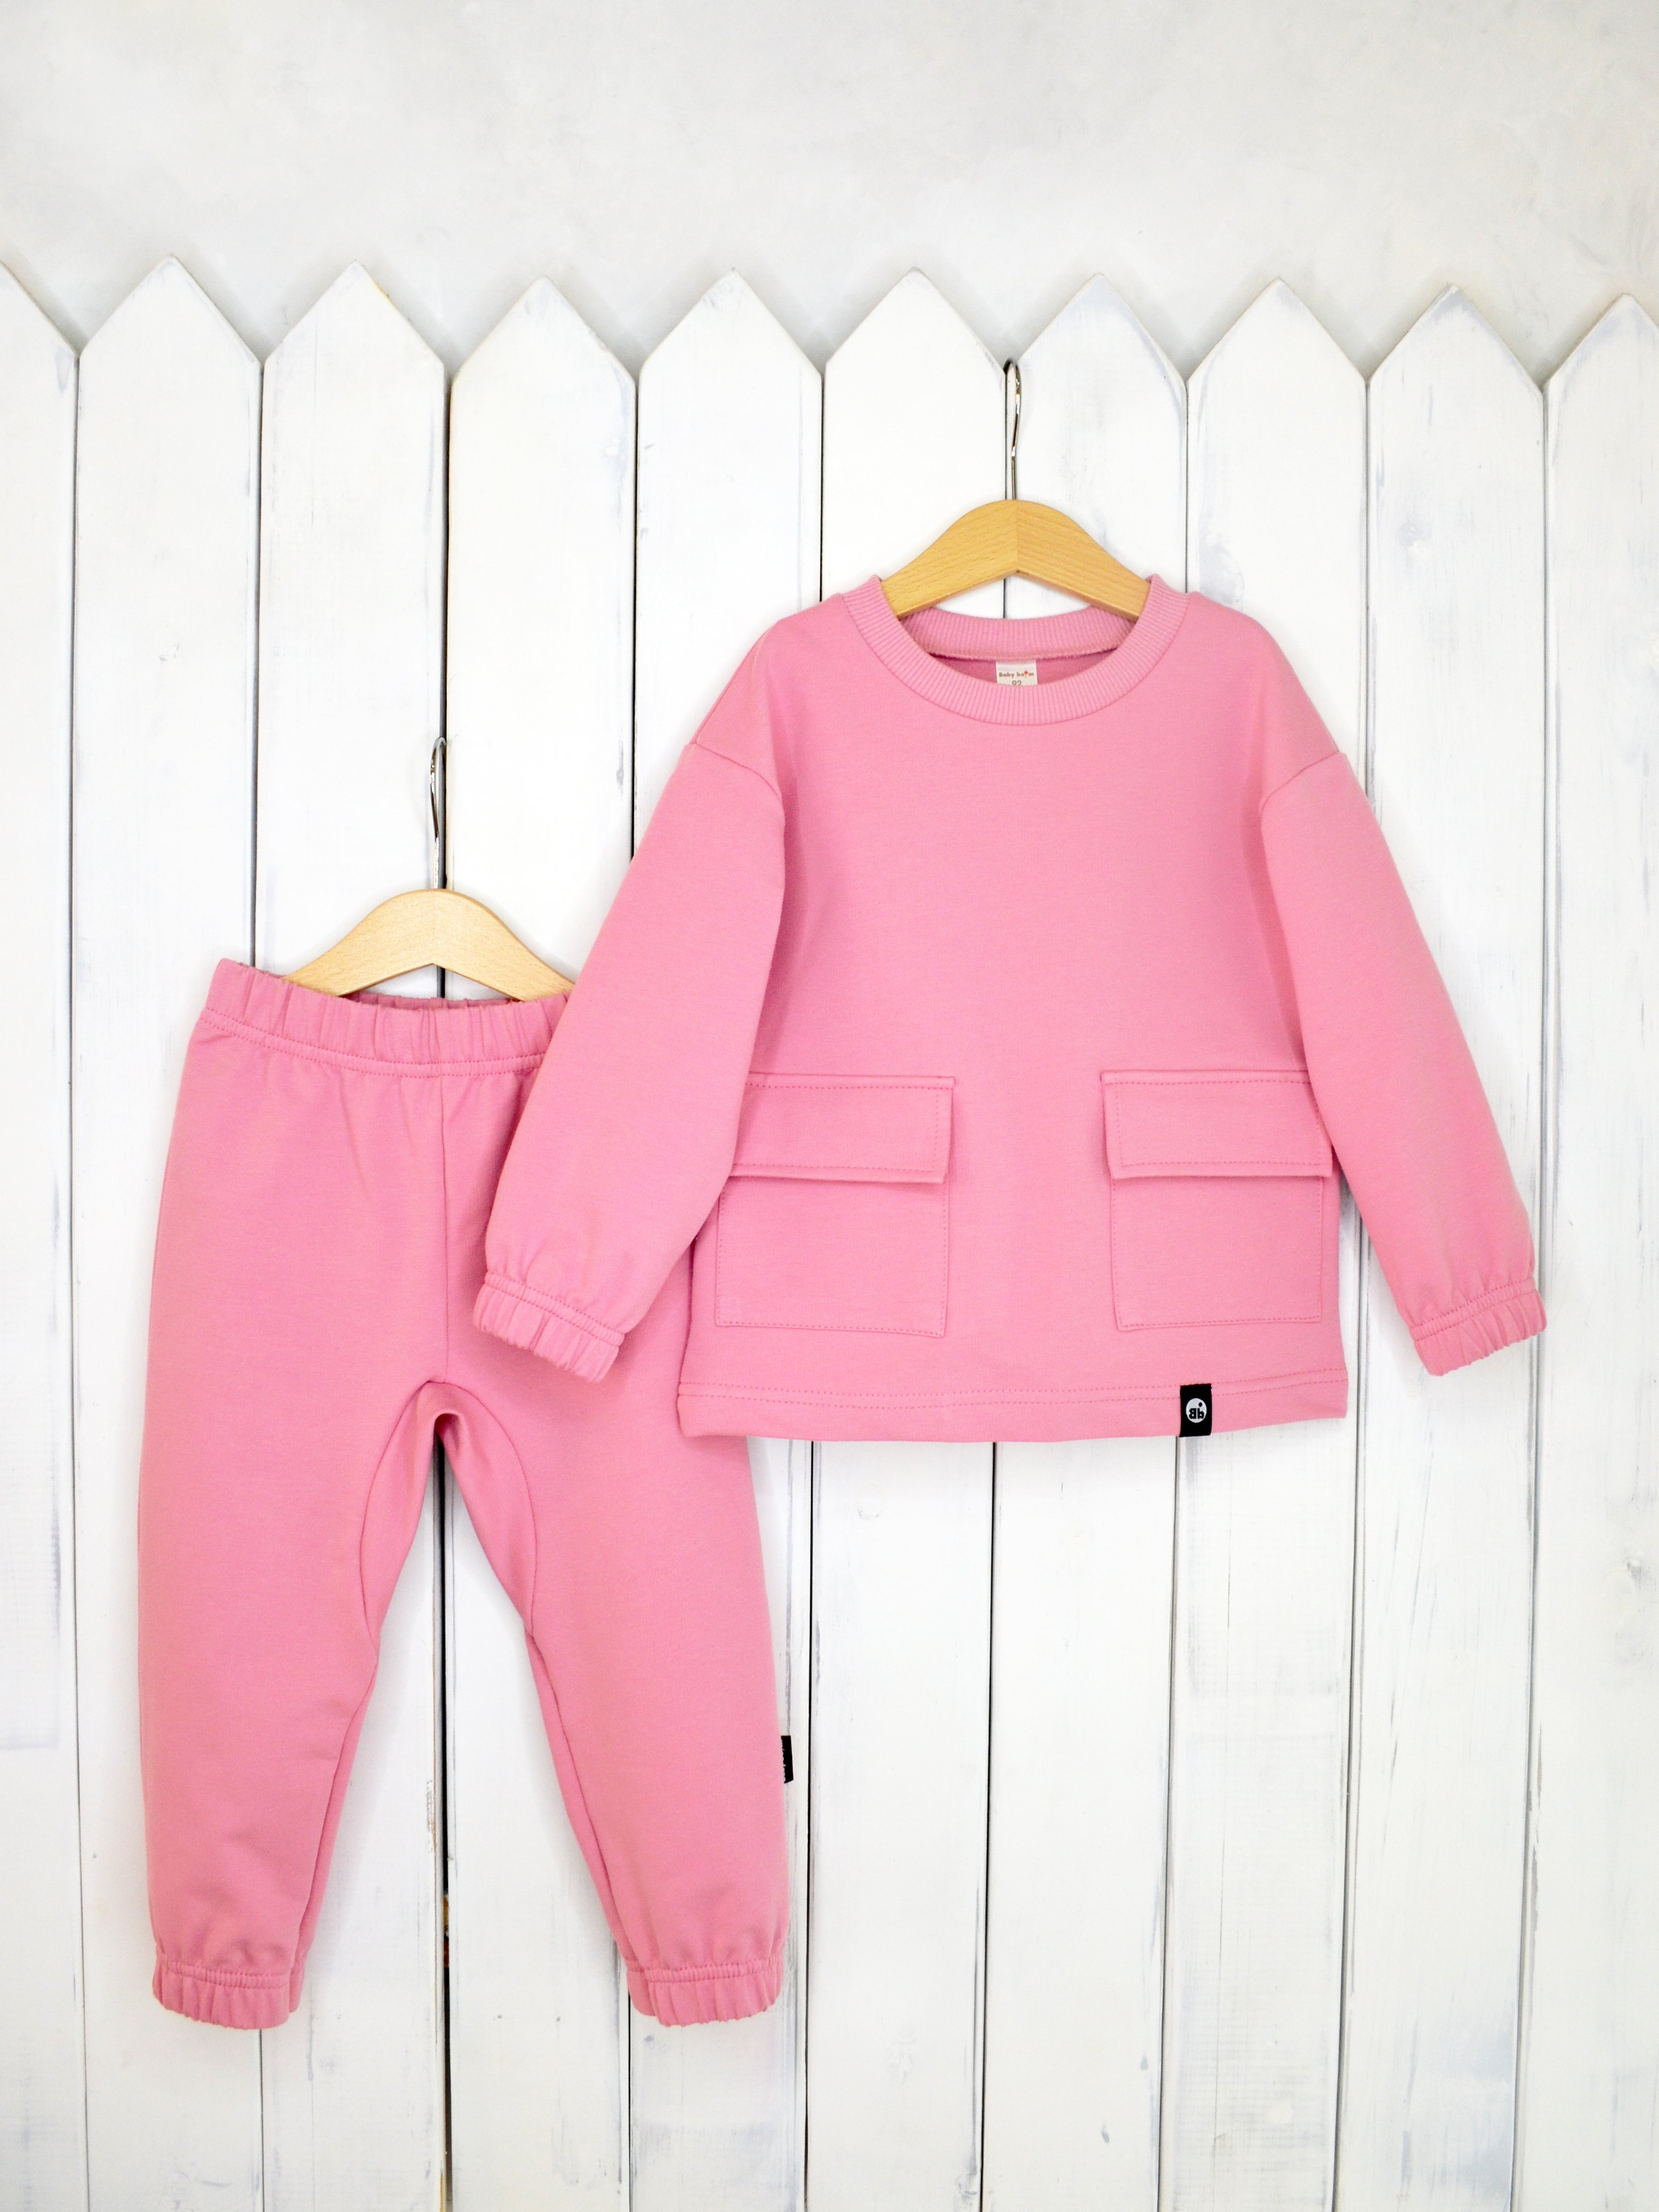 КД326/3-Ф Комплект детский джемпер+брюки цвет: розовый зефир р.98 Бэби Бум - Санкт-Петербург 